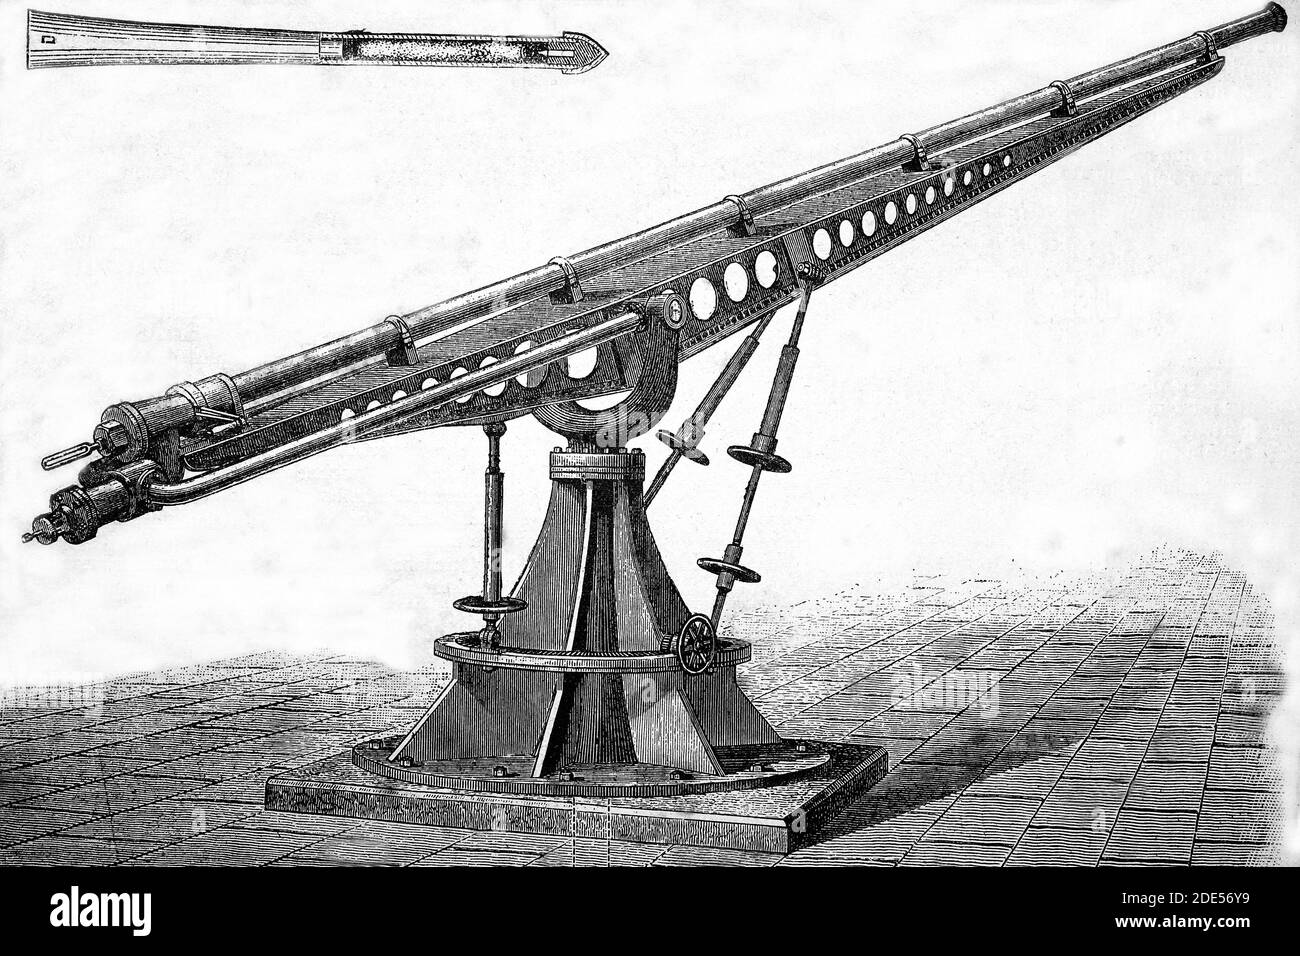 Cannon para disparar palos de dinamita probados en Fort Hamilton, cerca de Nueva York. Ilustración antigua. 1884. Foto de stock